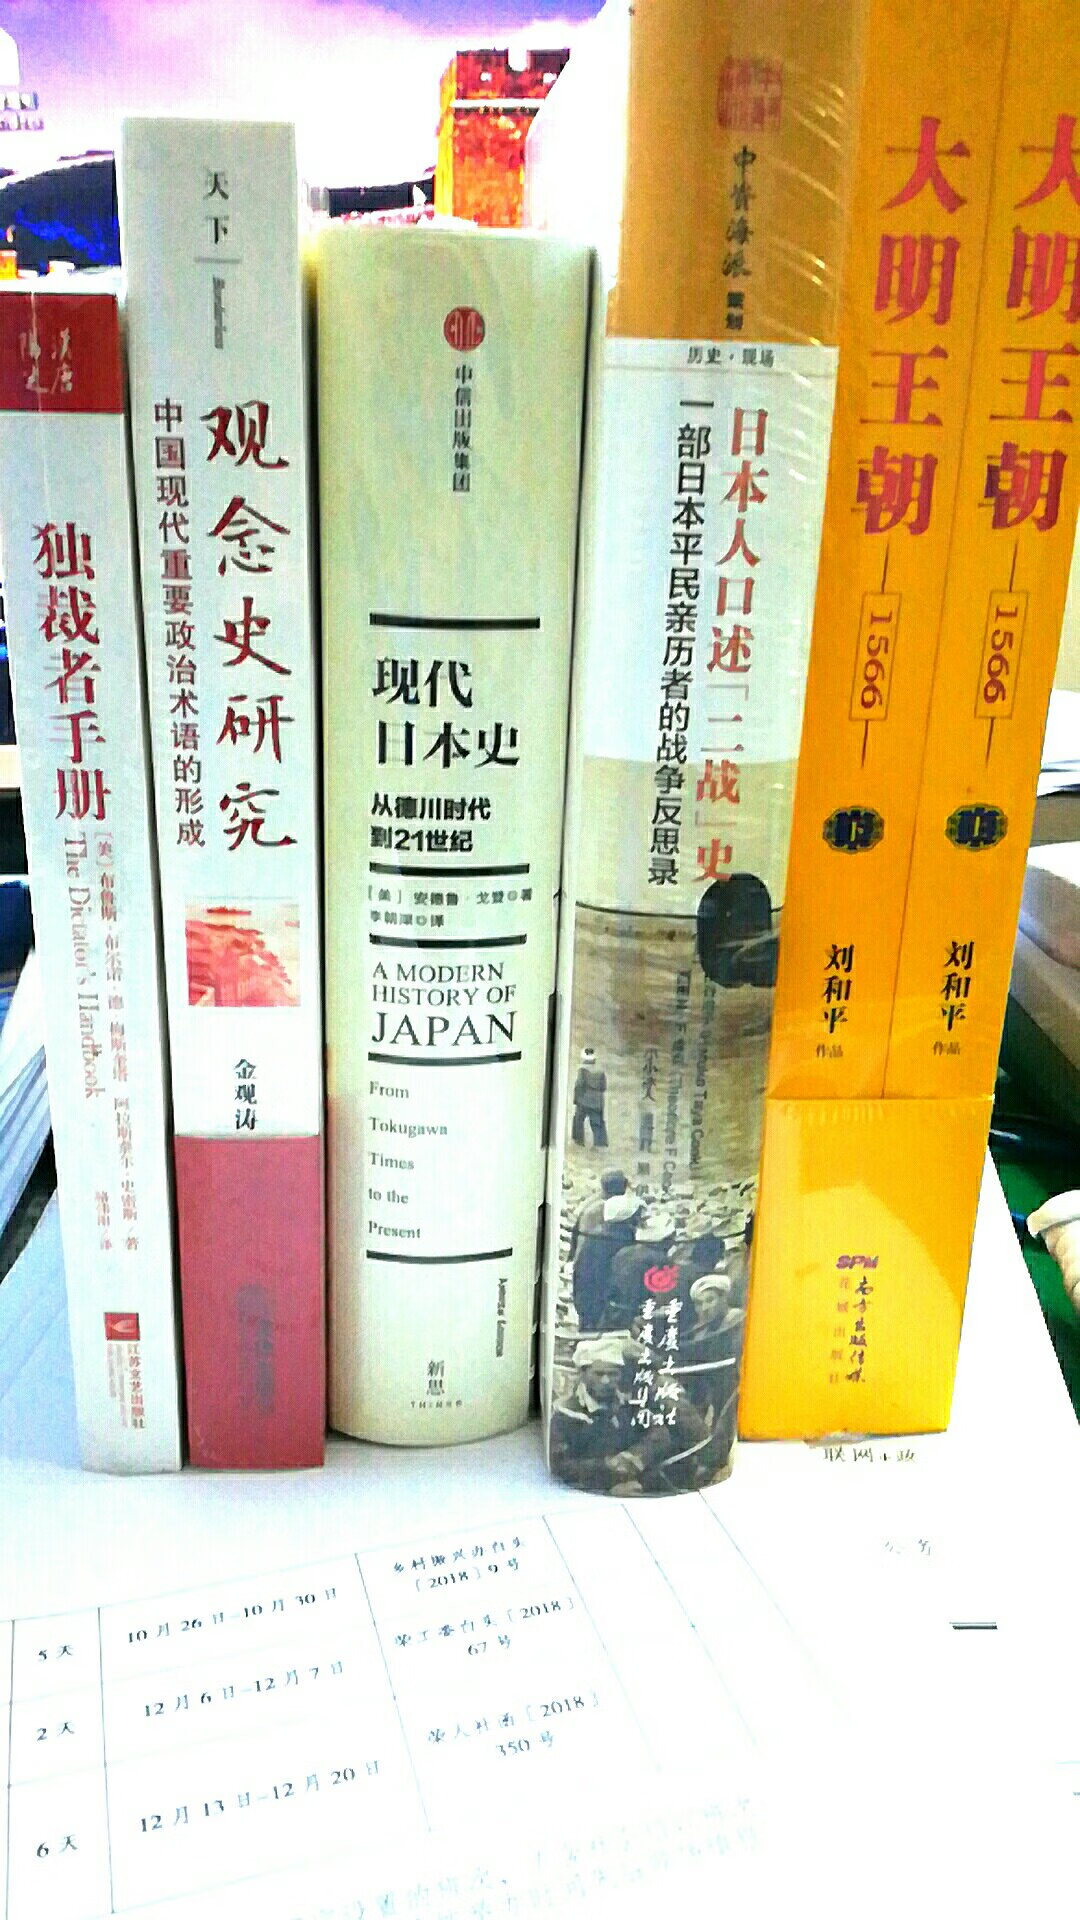 但是金观涛刘青峰的书，那是必须得好好看好好学习，好好消化！